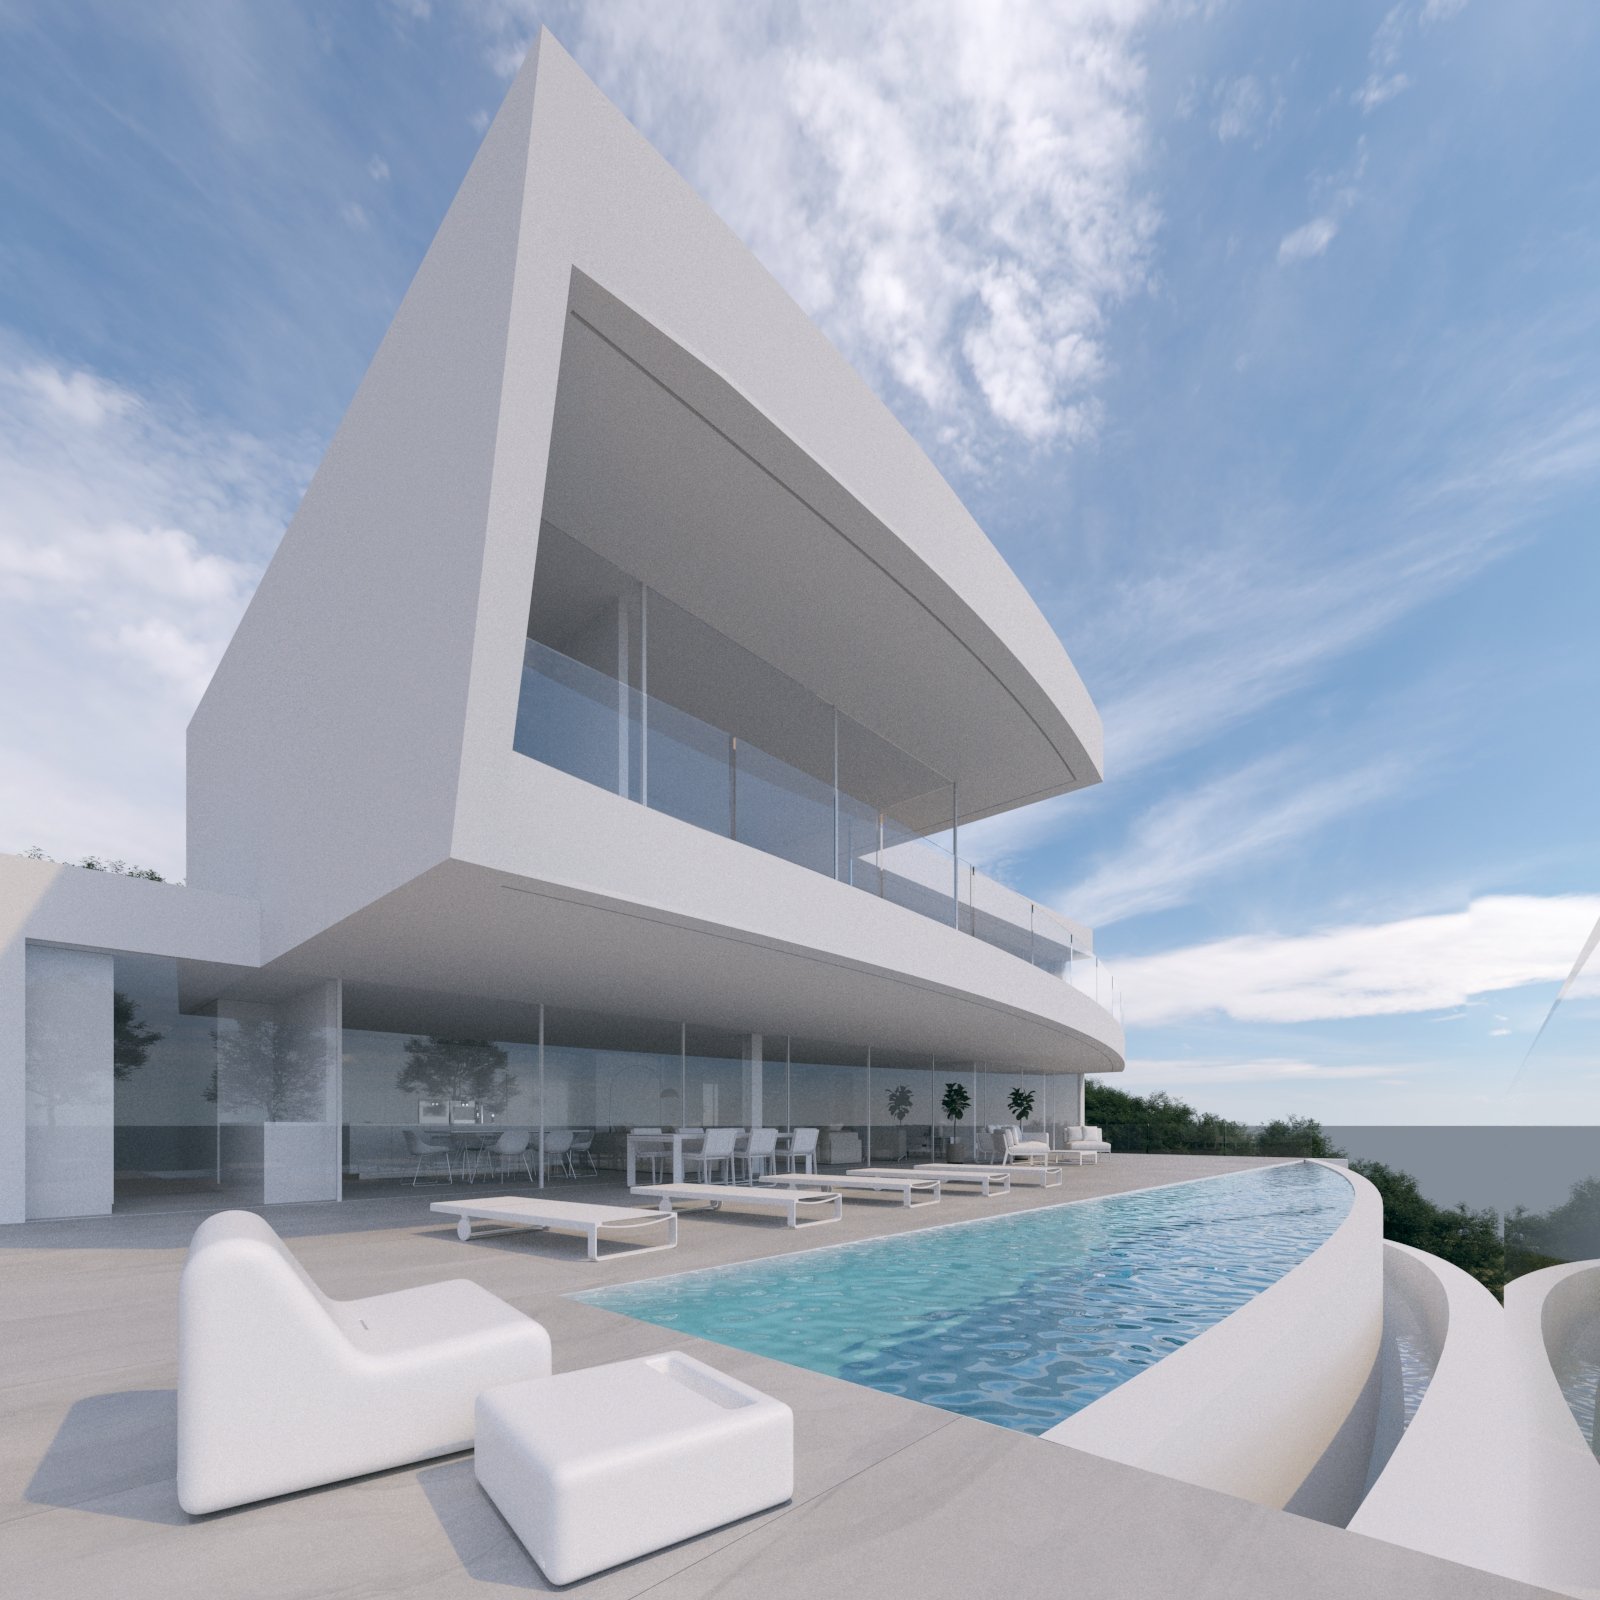 New Build Villa for Sale in Moraira